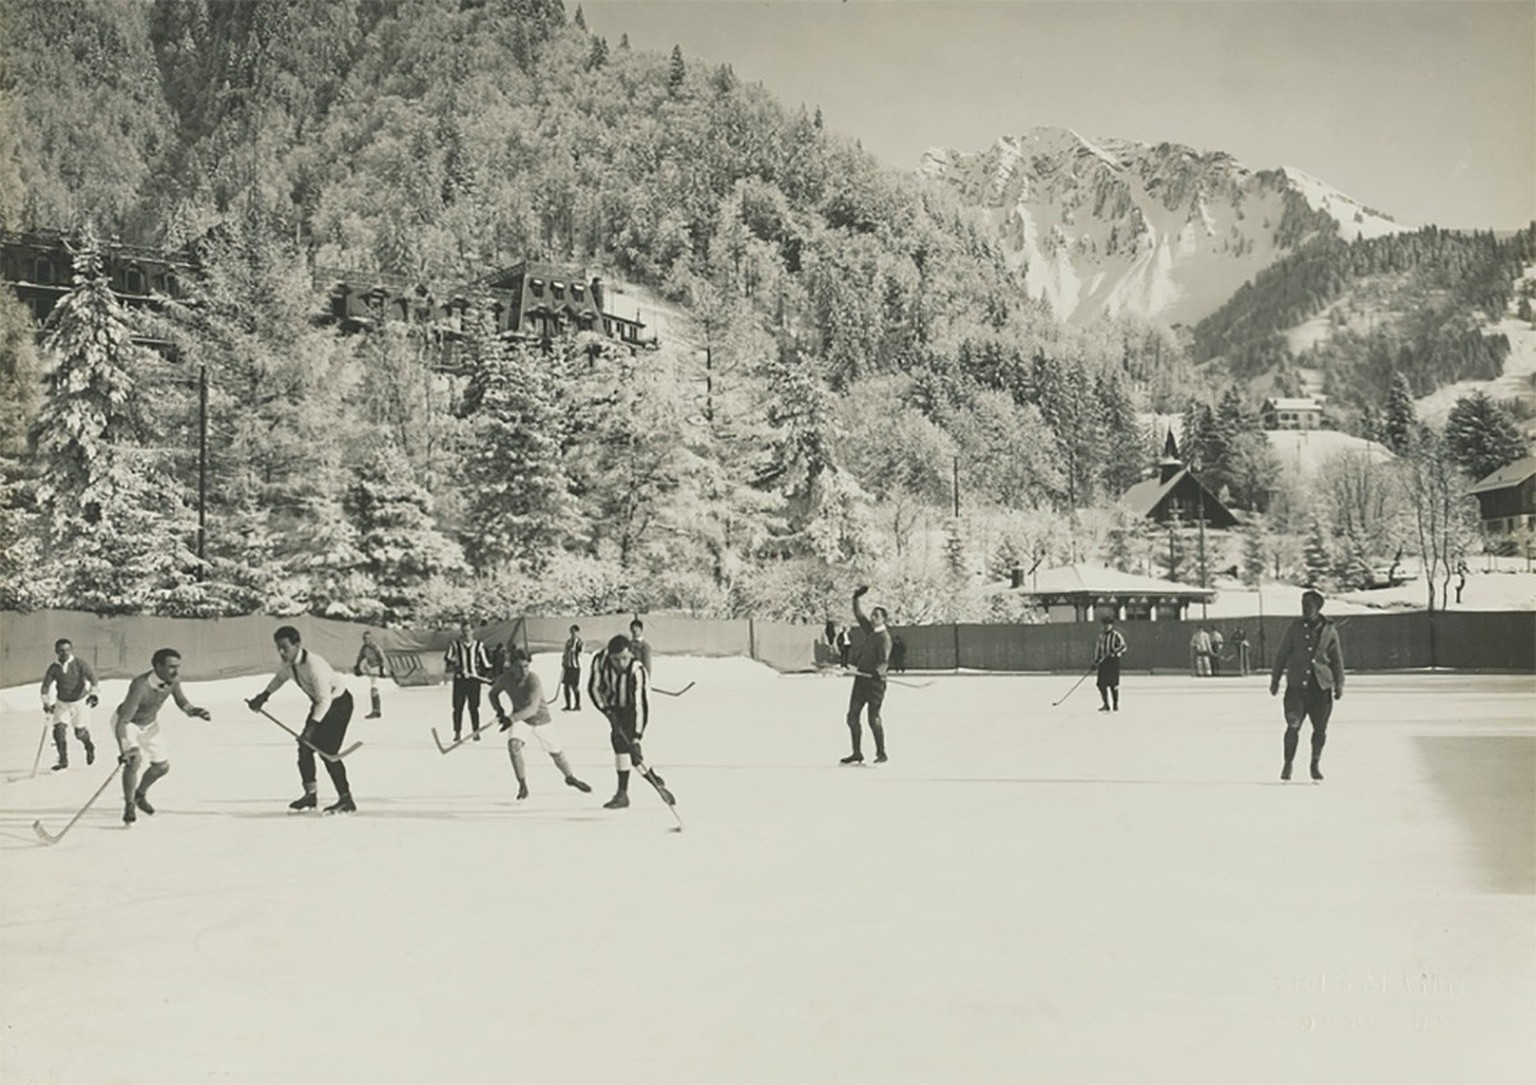 Elegantes Eishockeyspiel im Grand Hotel von Les Avants VD in den 1920ern.
http://doi.org/10.3932/ethz-a-000102587